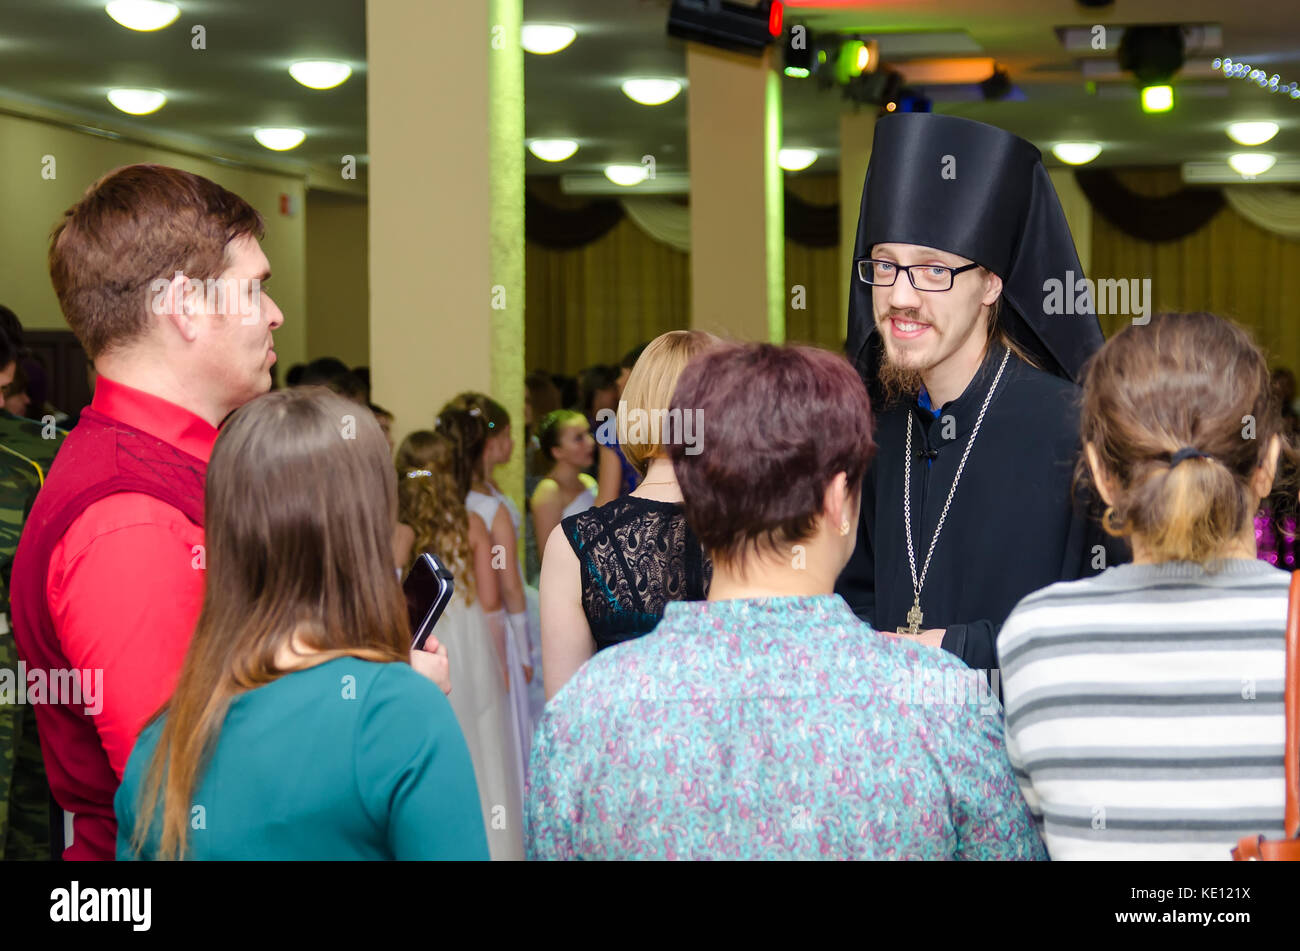 Komsomolsk-on-Amur, 15-01-2016, Sretensky Ball. Orthodox priest talking to people at the feast. Stock Photo